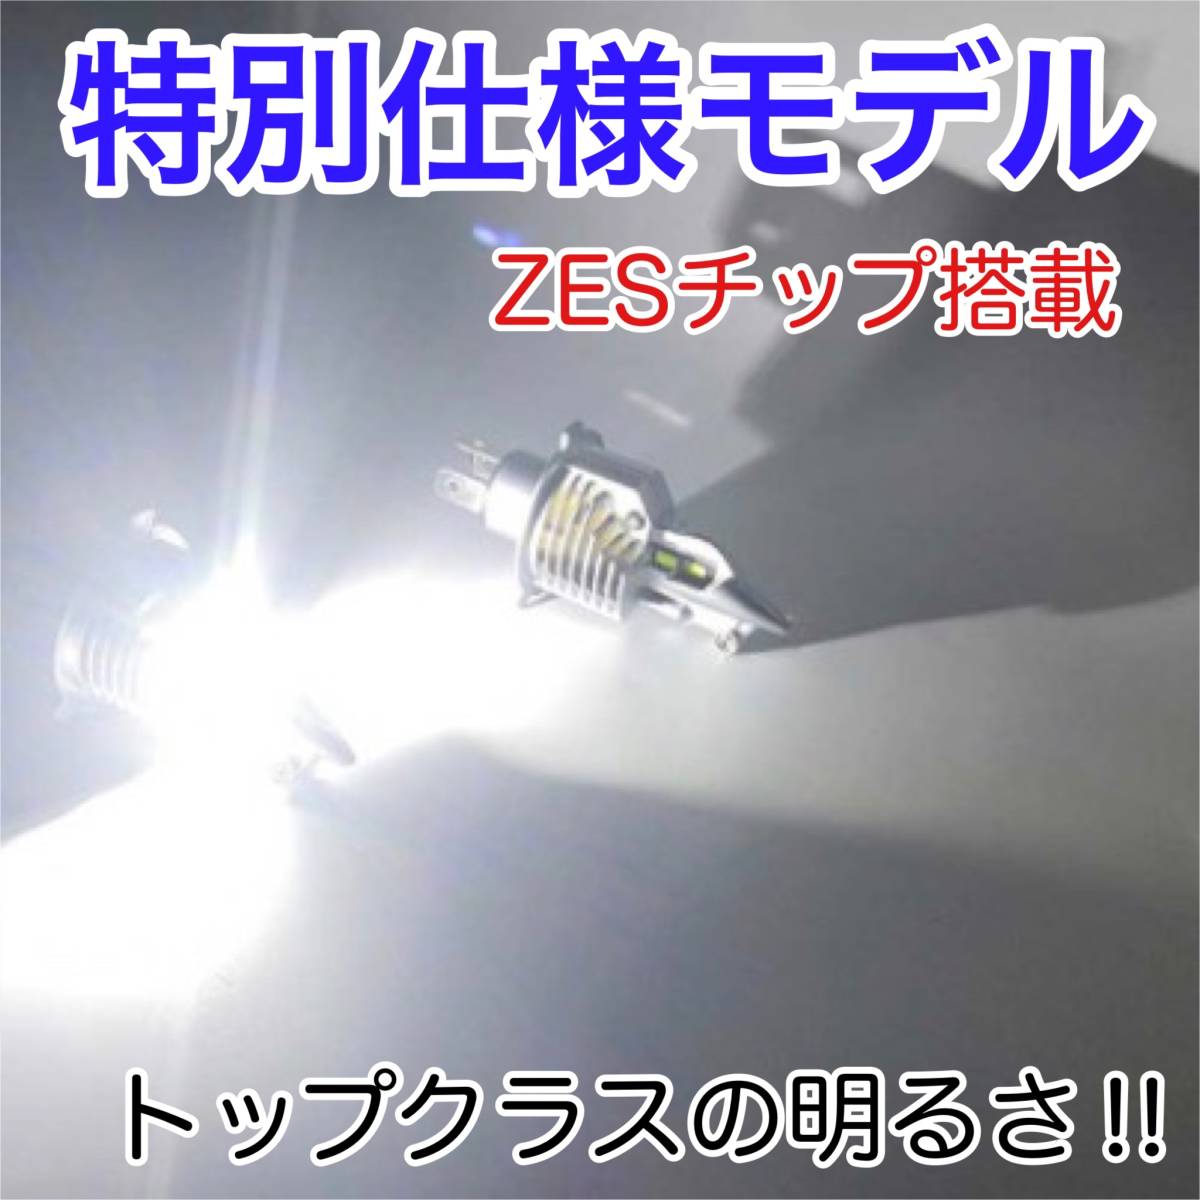 SUZUKI スズキ RGV250ガンマVJ22A LEDヘッドライト H4 Hi/Lo バルブ バイク用 1灯 S25 テールランプ2個 ホワイト 交換用_画像2